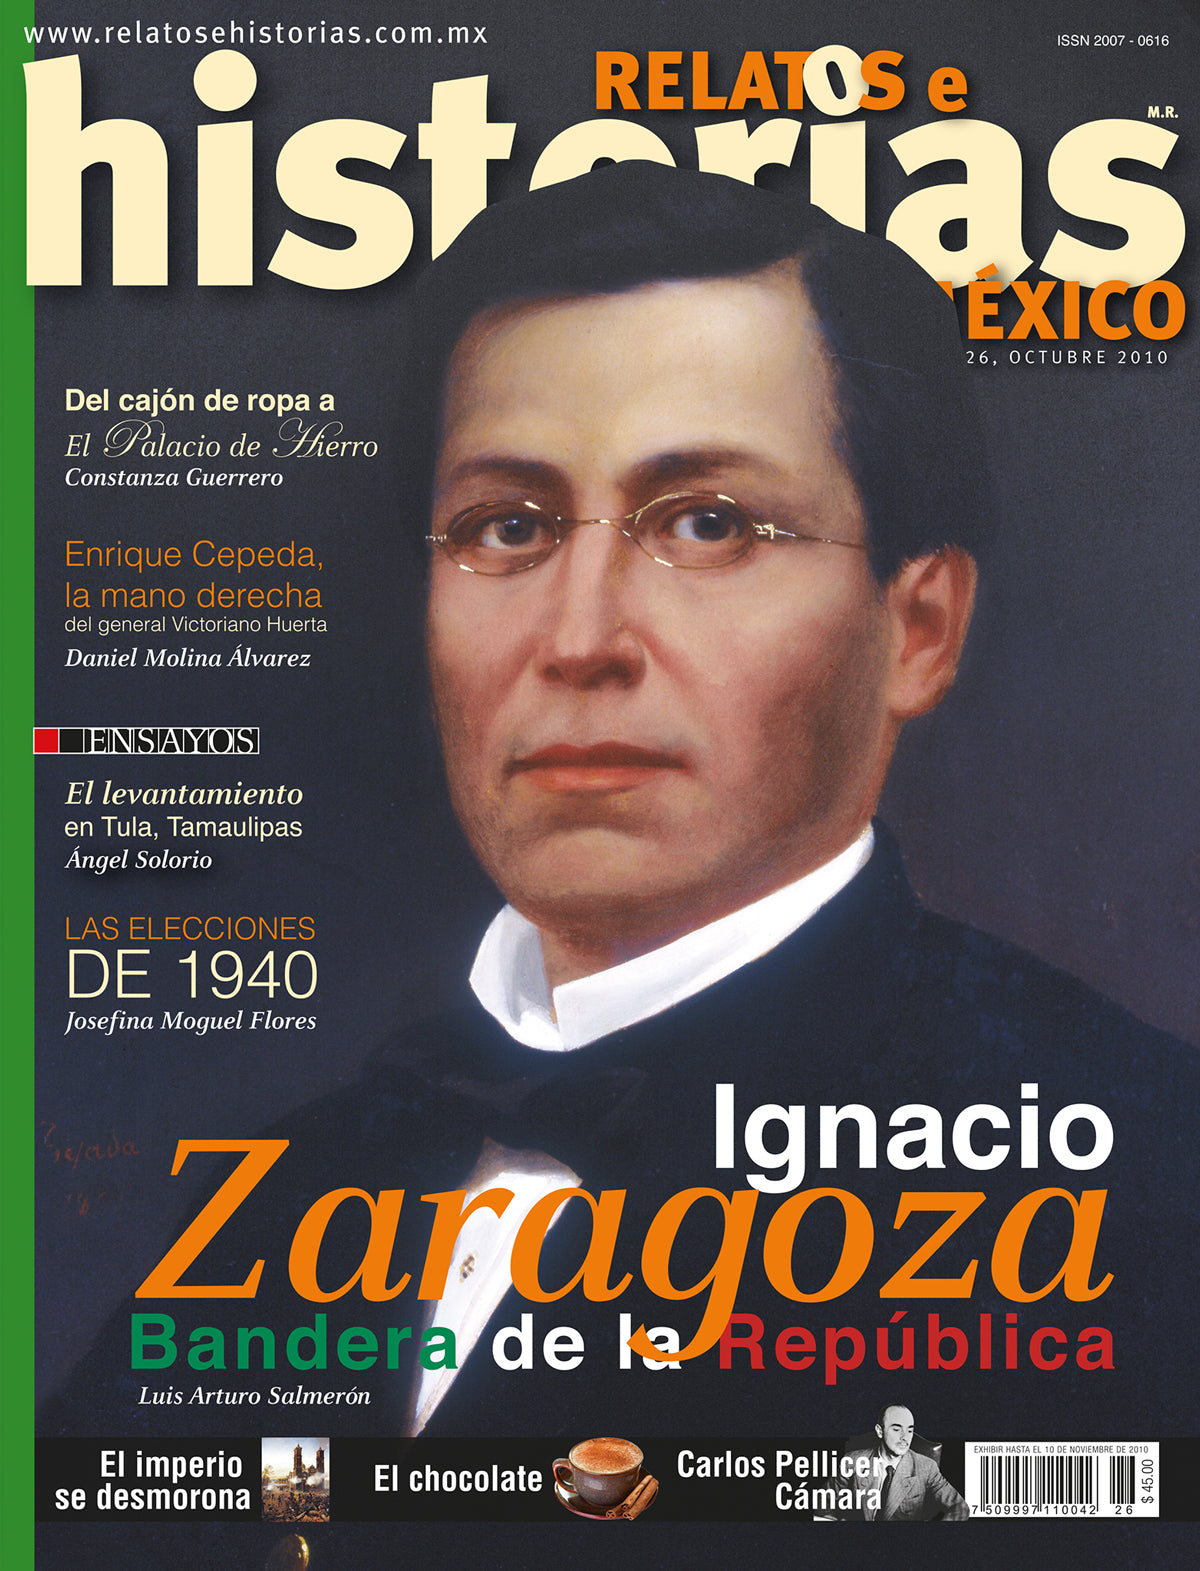 Ignacio Zaragoza. Bandera de la República